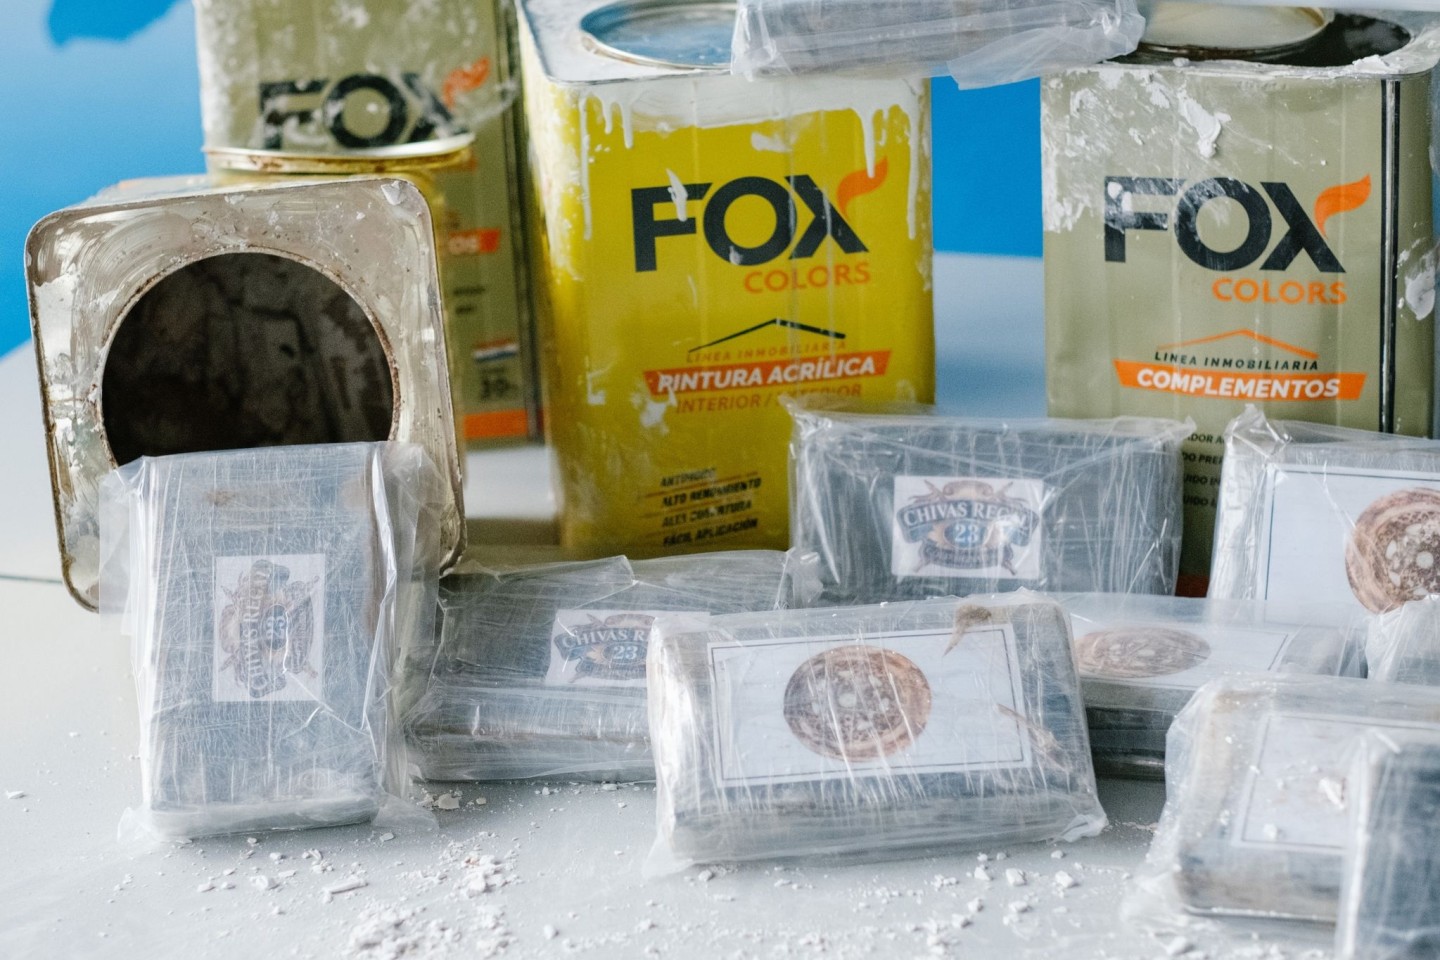 16 Kilogramm beschlagnahmtes, teils in Dosen mit Spachtelmasse verstecktes Kokain.